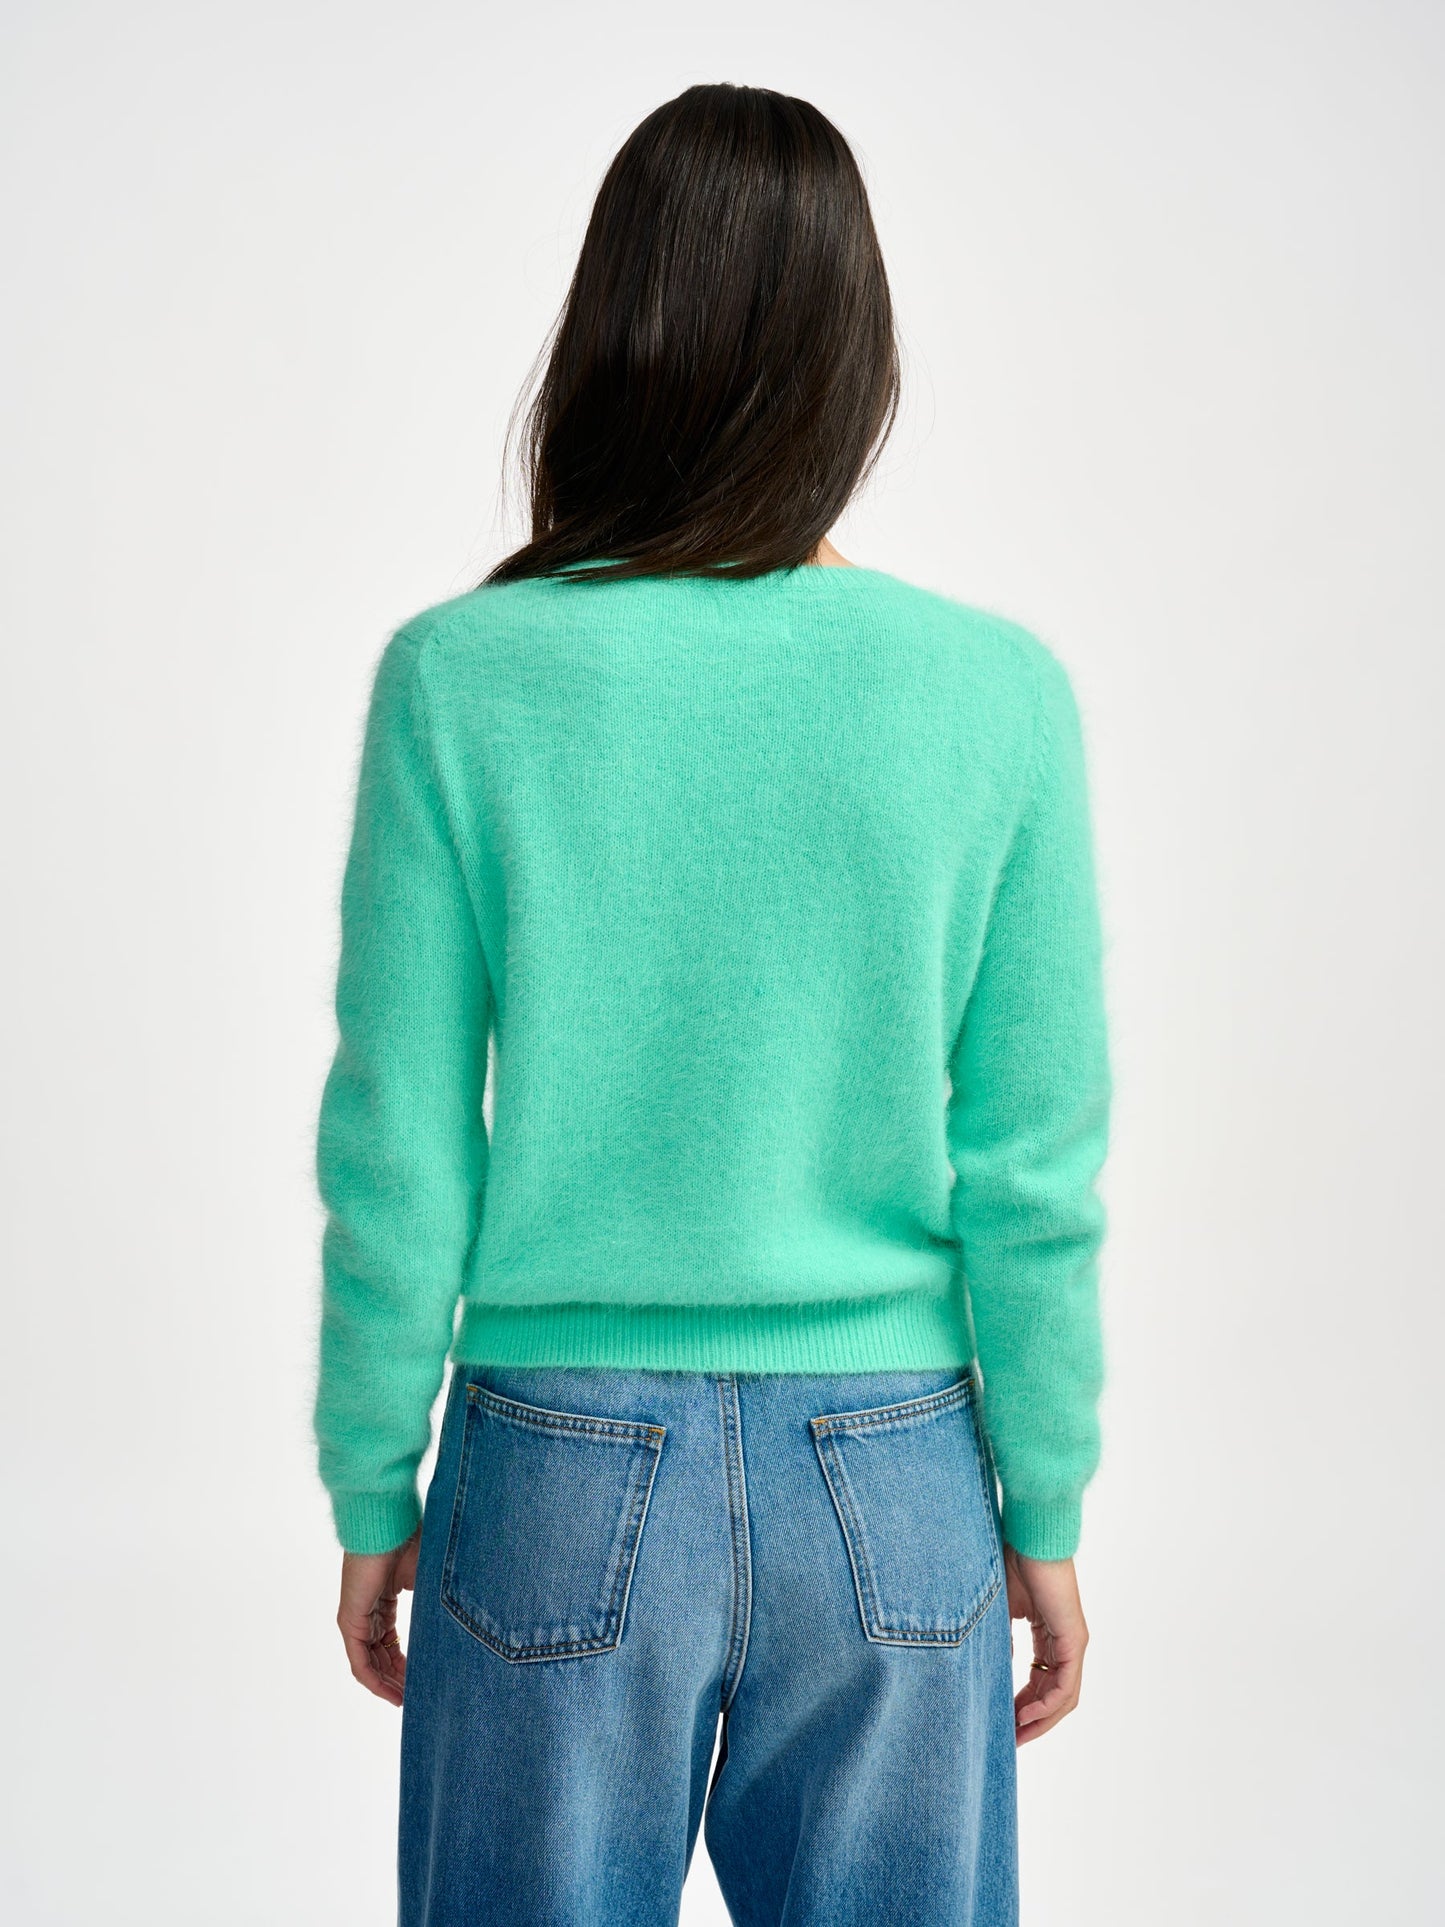 Datti Sweater by Bellerose